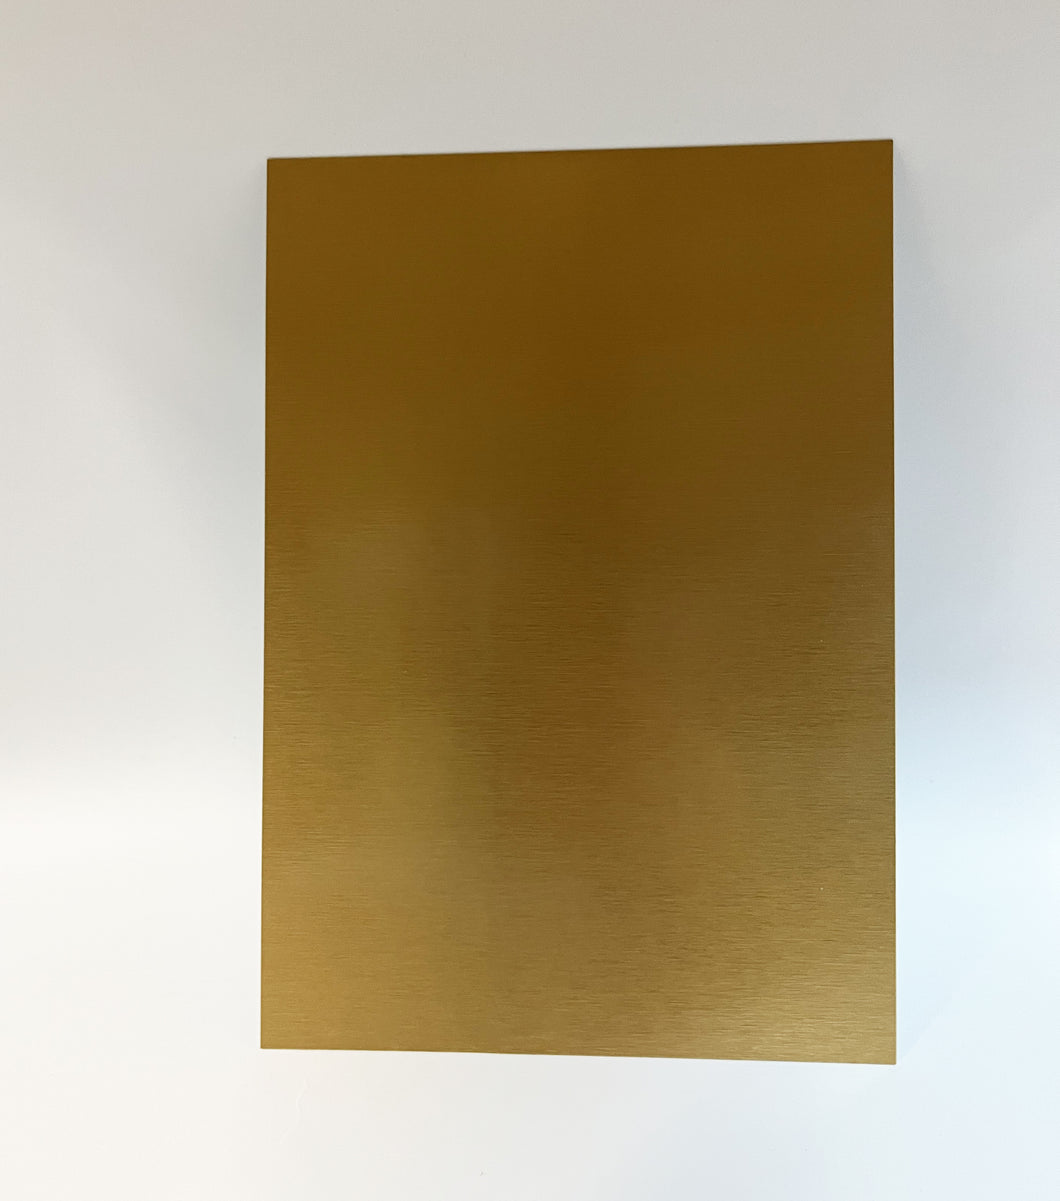 Aluminiumplatte 26 x 18 cm, Silber, Weiß, Gold - KlaSopLeen UG